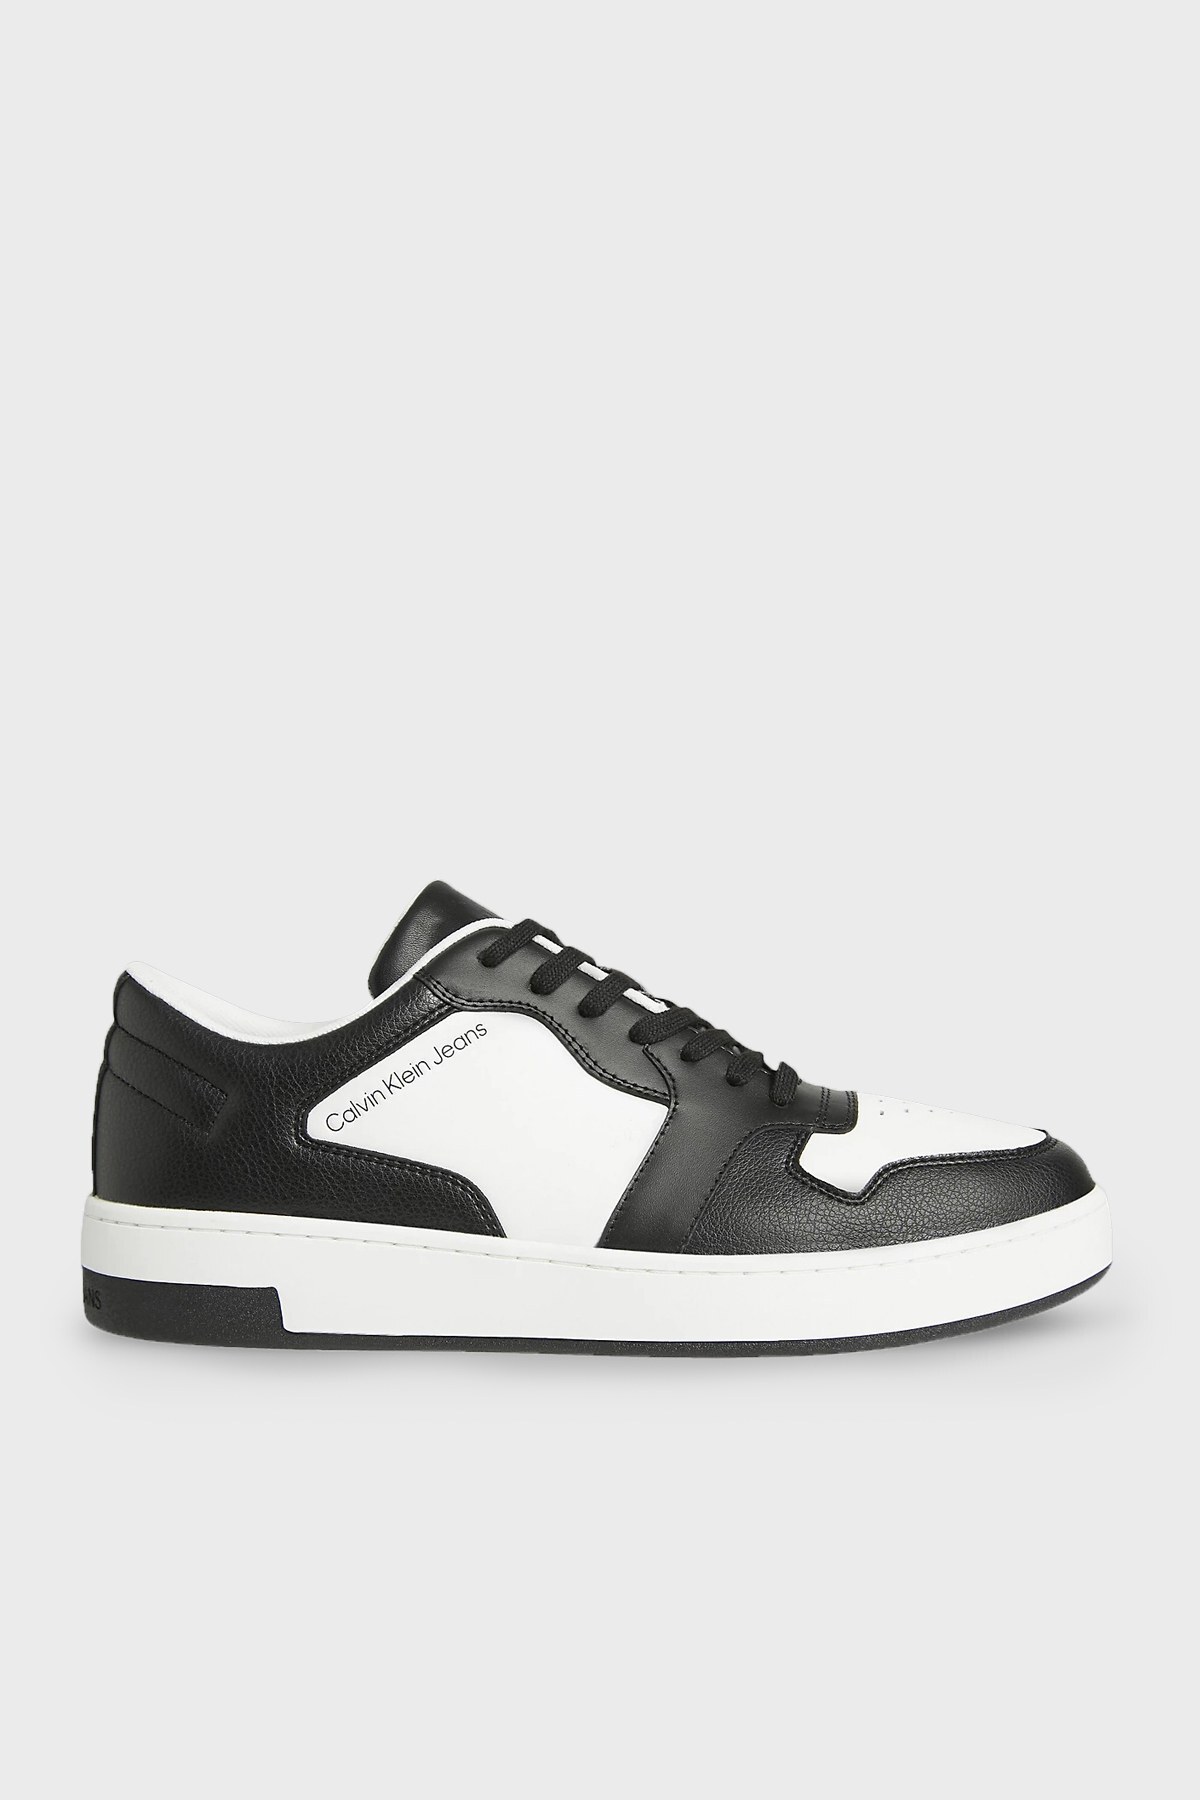 Calvin Klein Logolu Bağcıklı Hakiki Deri Sneaker Erkek Ayakkabı YM0YM00449 0K8 BEYAZ